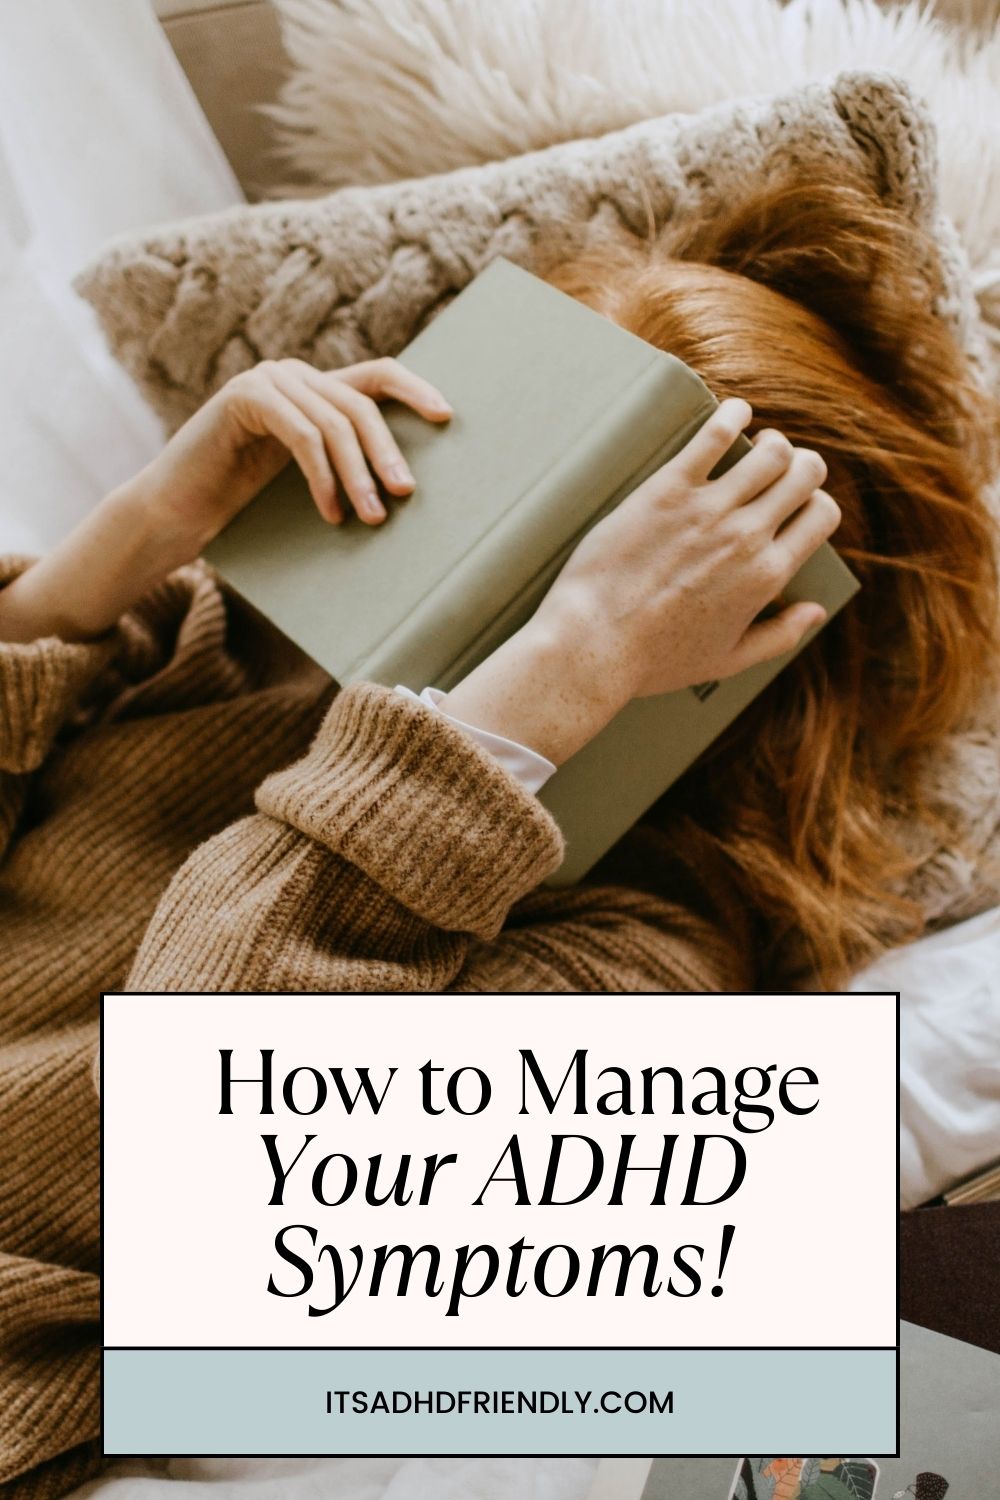 ADHD COACH TIP